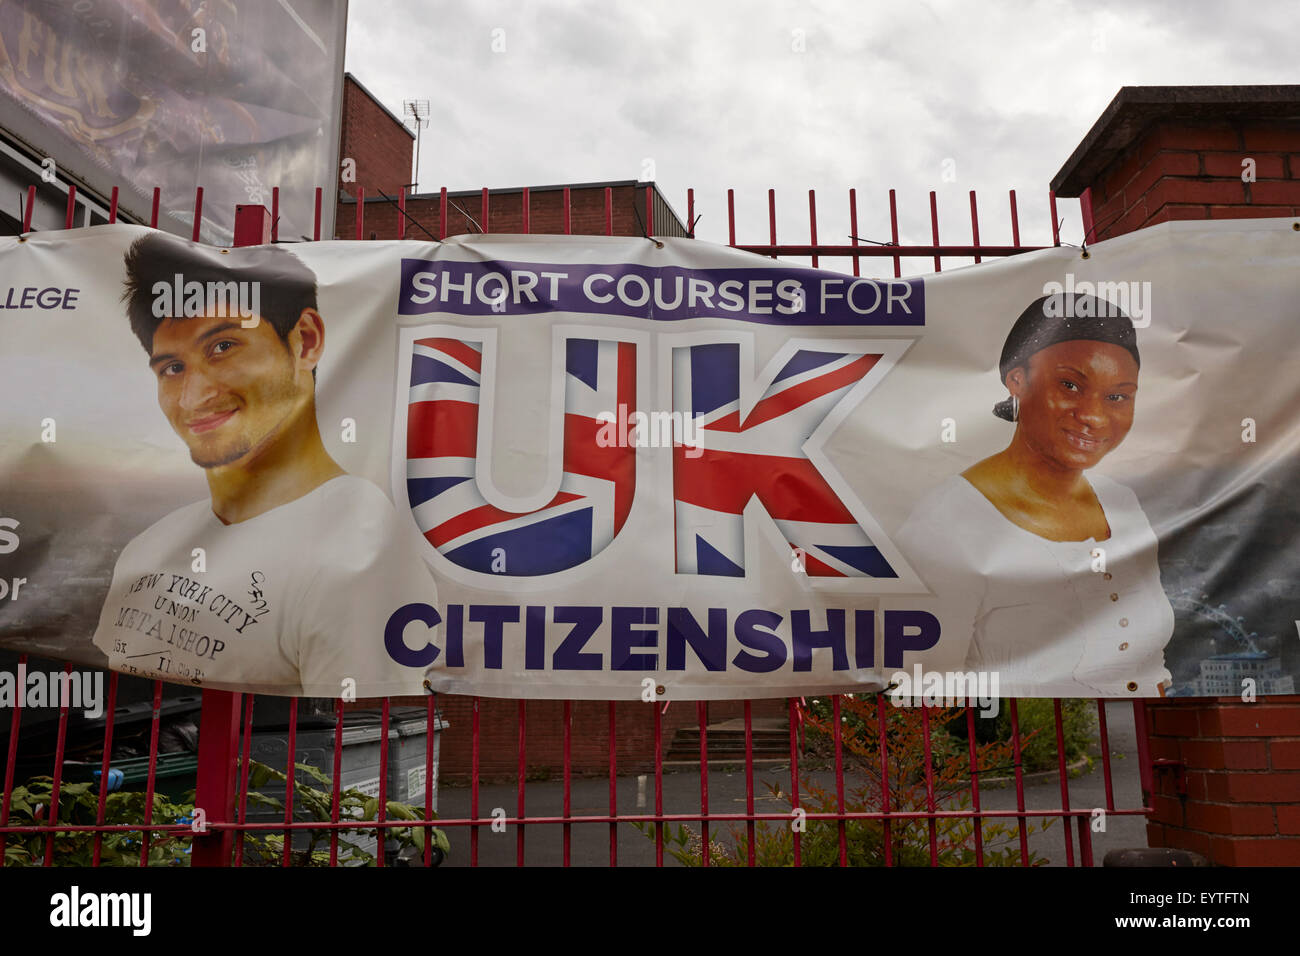 Anuncio para cursos cortos de nacionalidad británica en Birmingham, Reino Unido Foto de stock